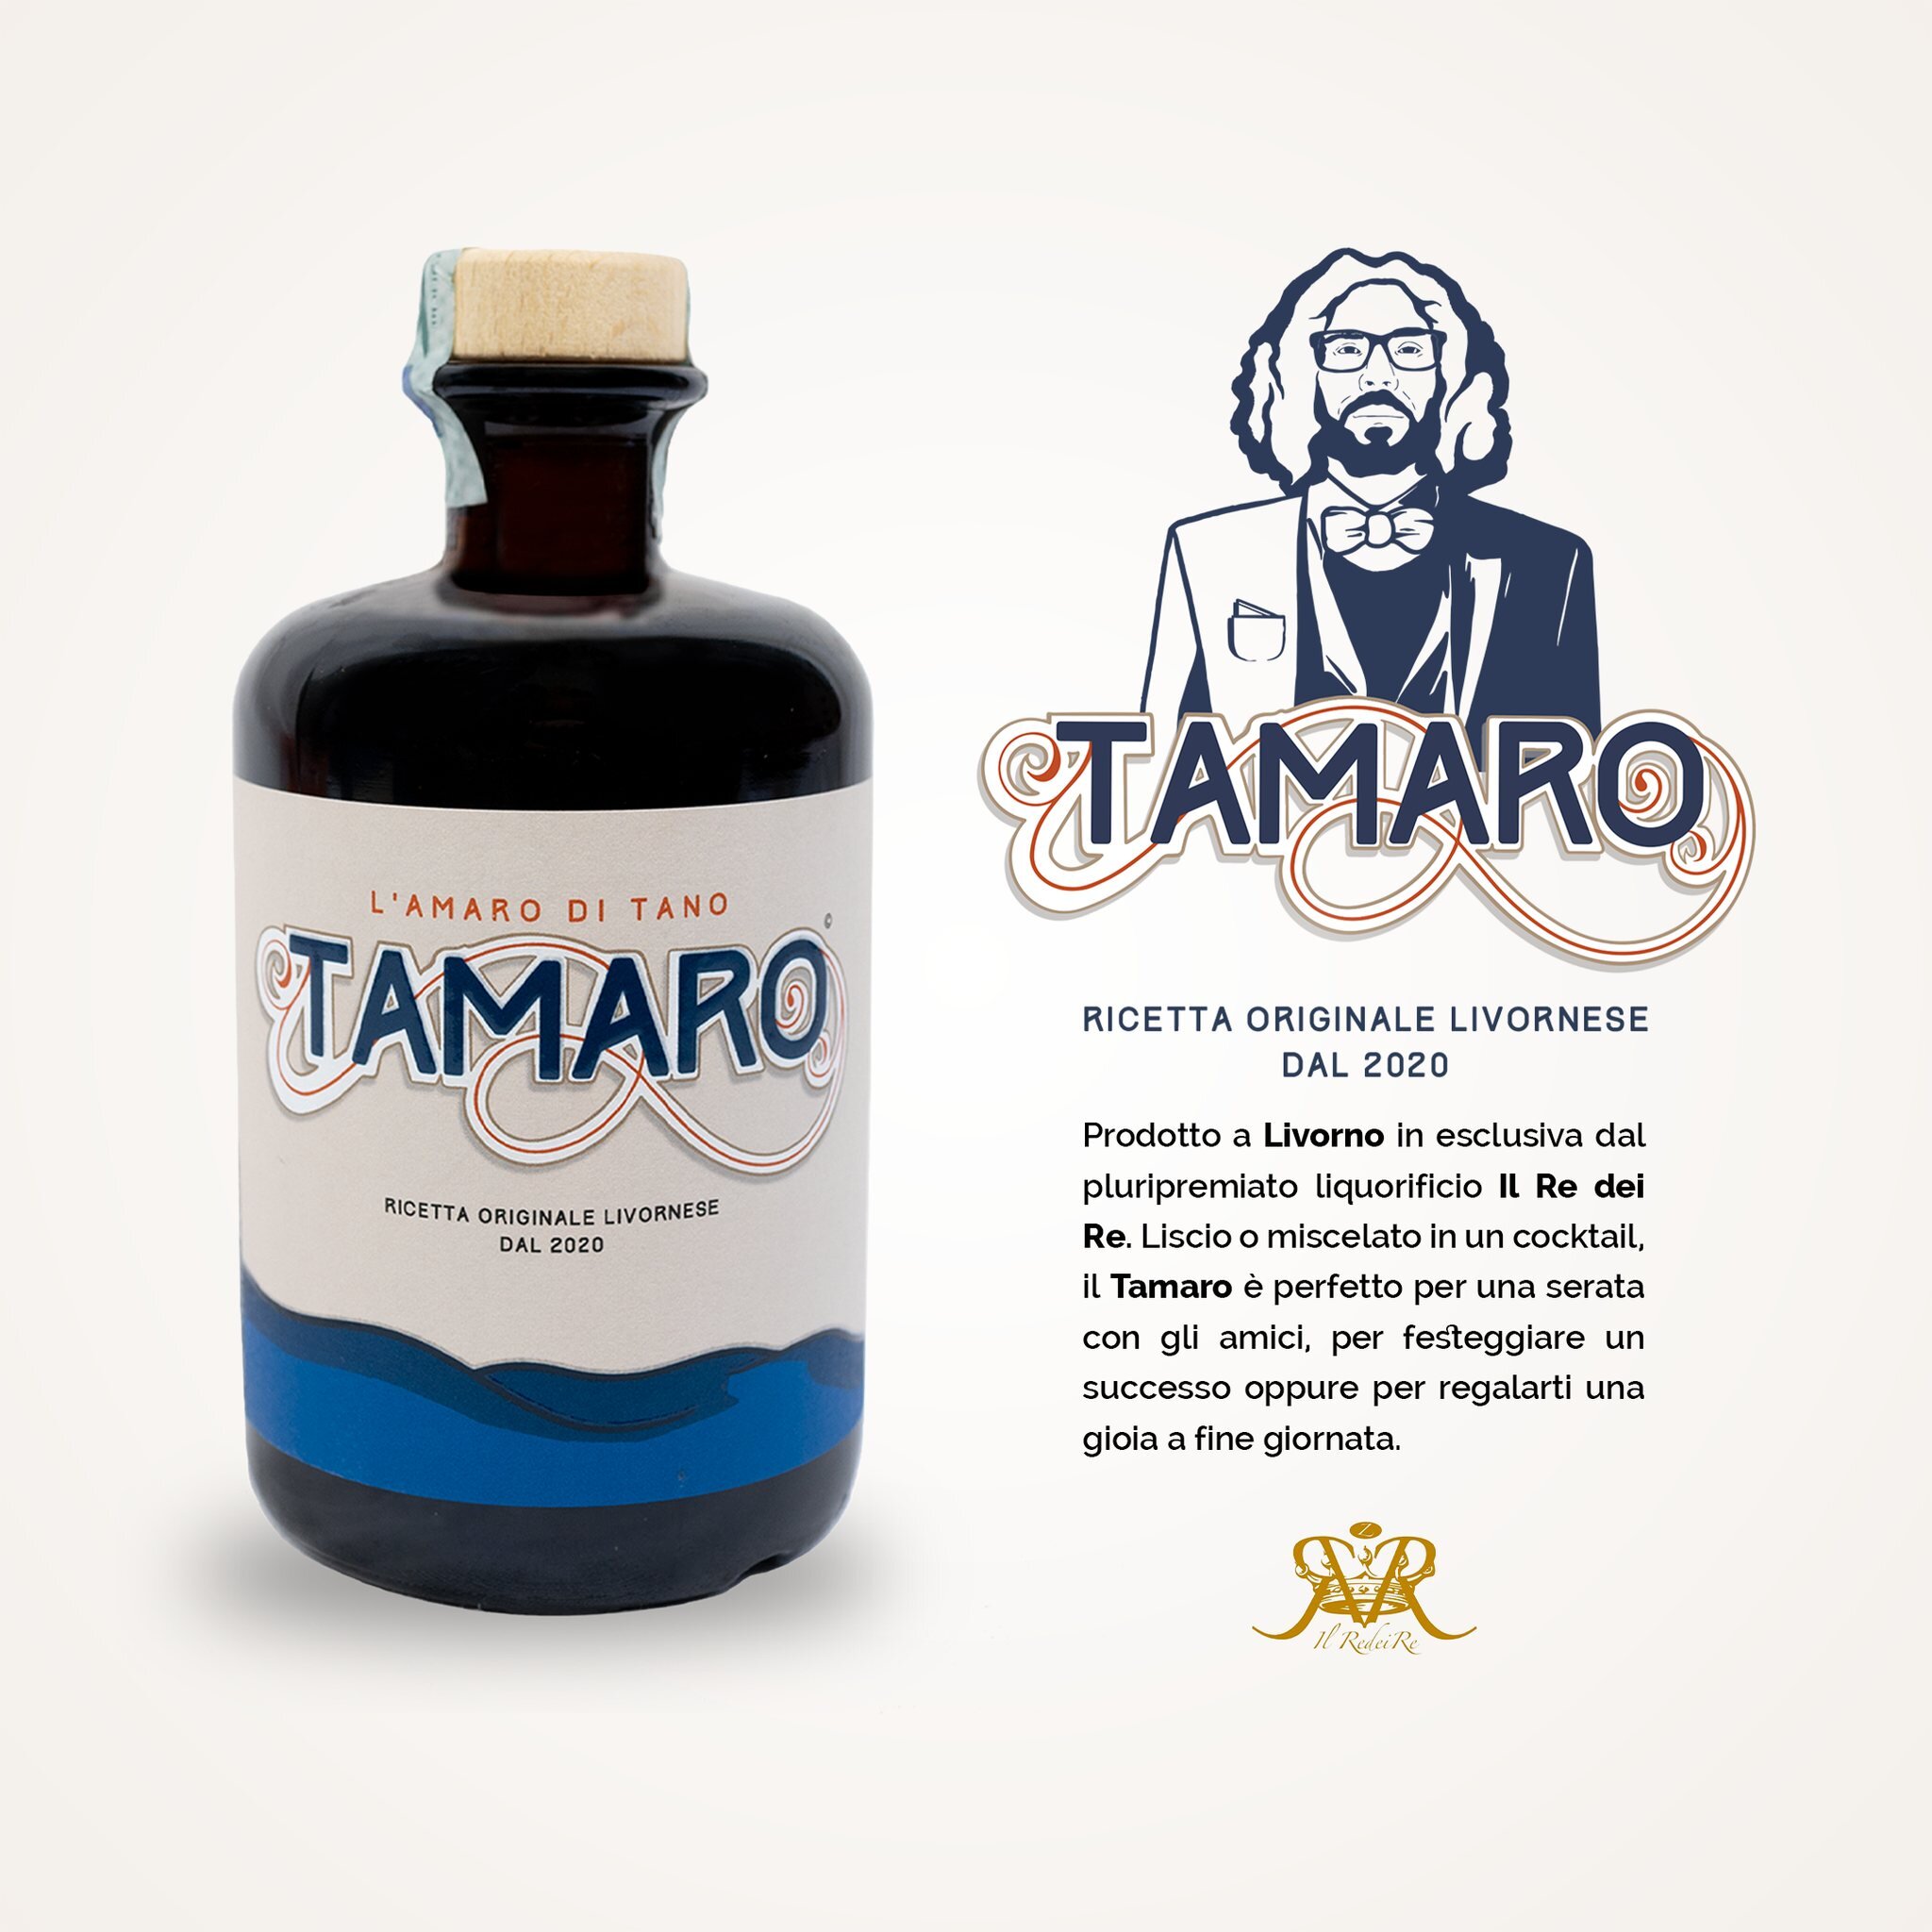 Tamaro - L'amaro di Tano

Prodotto a Livorno in esclusiva dal pluripremiato liquorificio Il Re dei Re. Liscio o miscelato per una serata con gli amici, per festeggiare un successo oppure per regalarti una gioia a fine giornata.

Scopri il nuovo Tamar